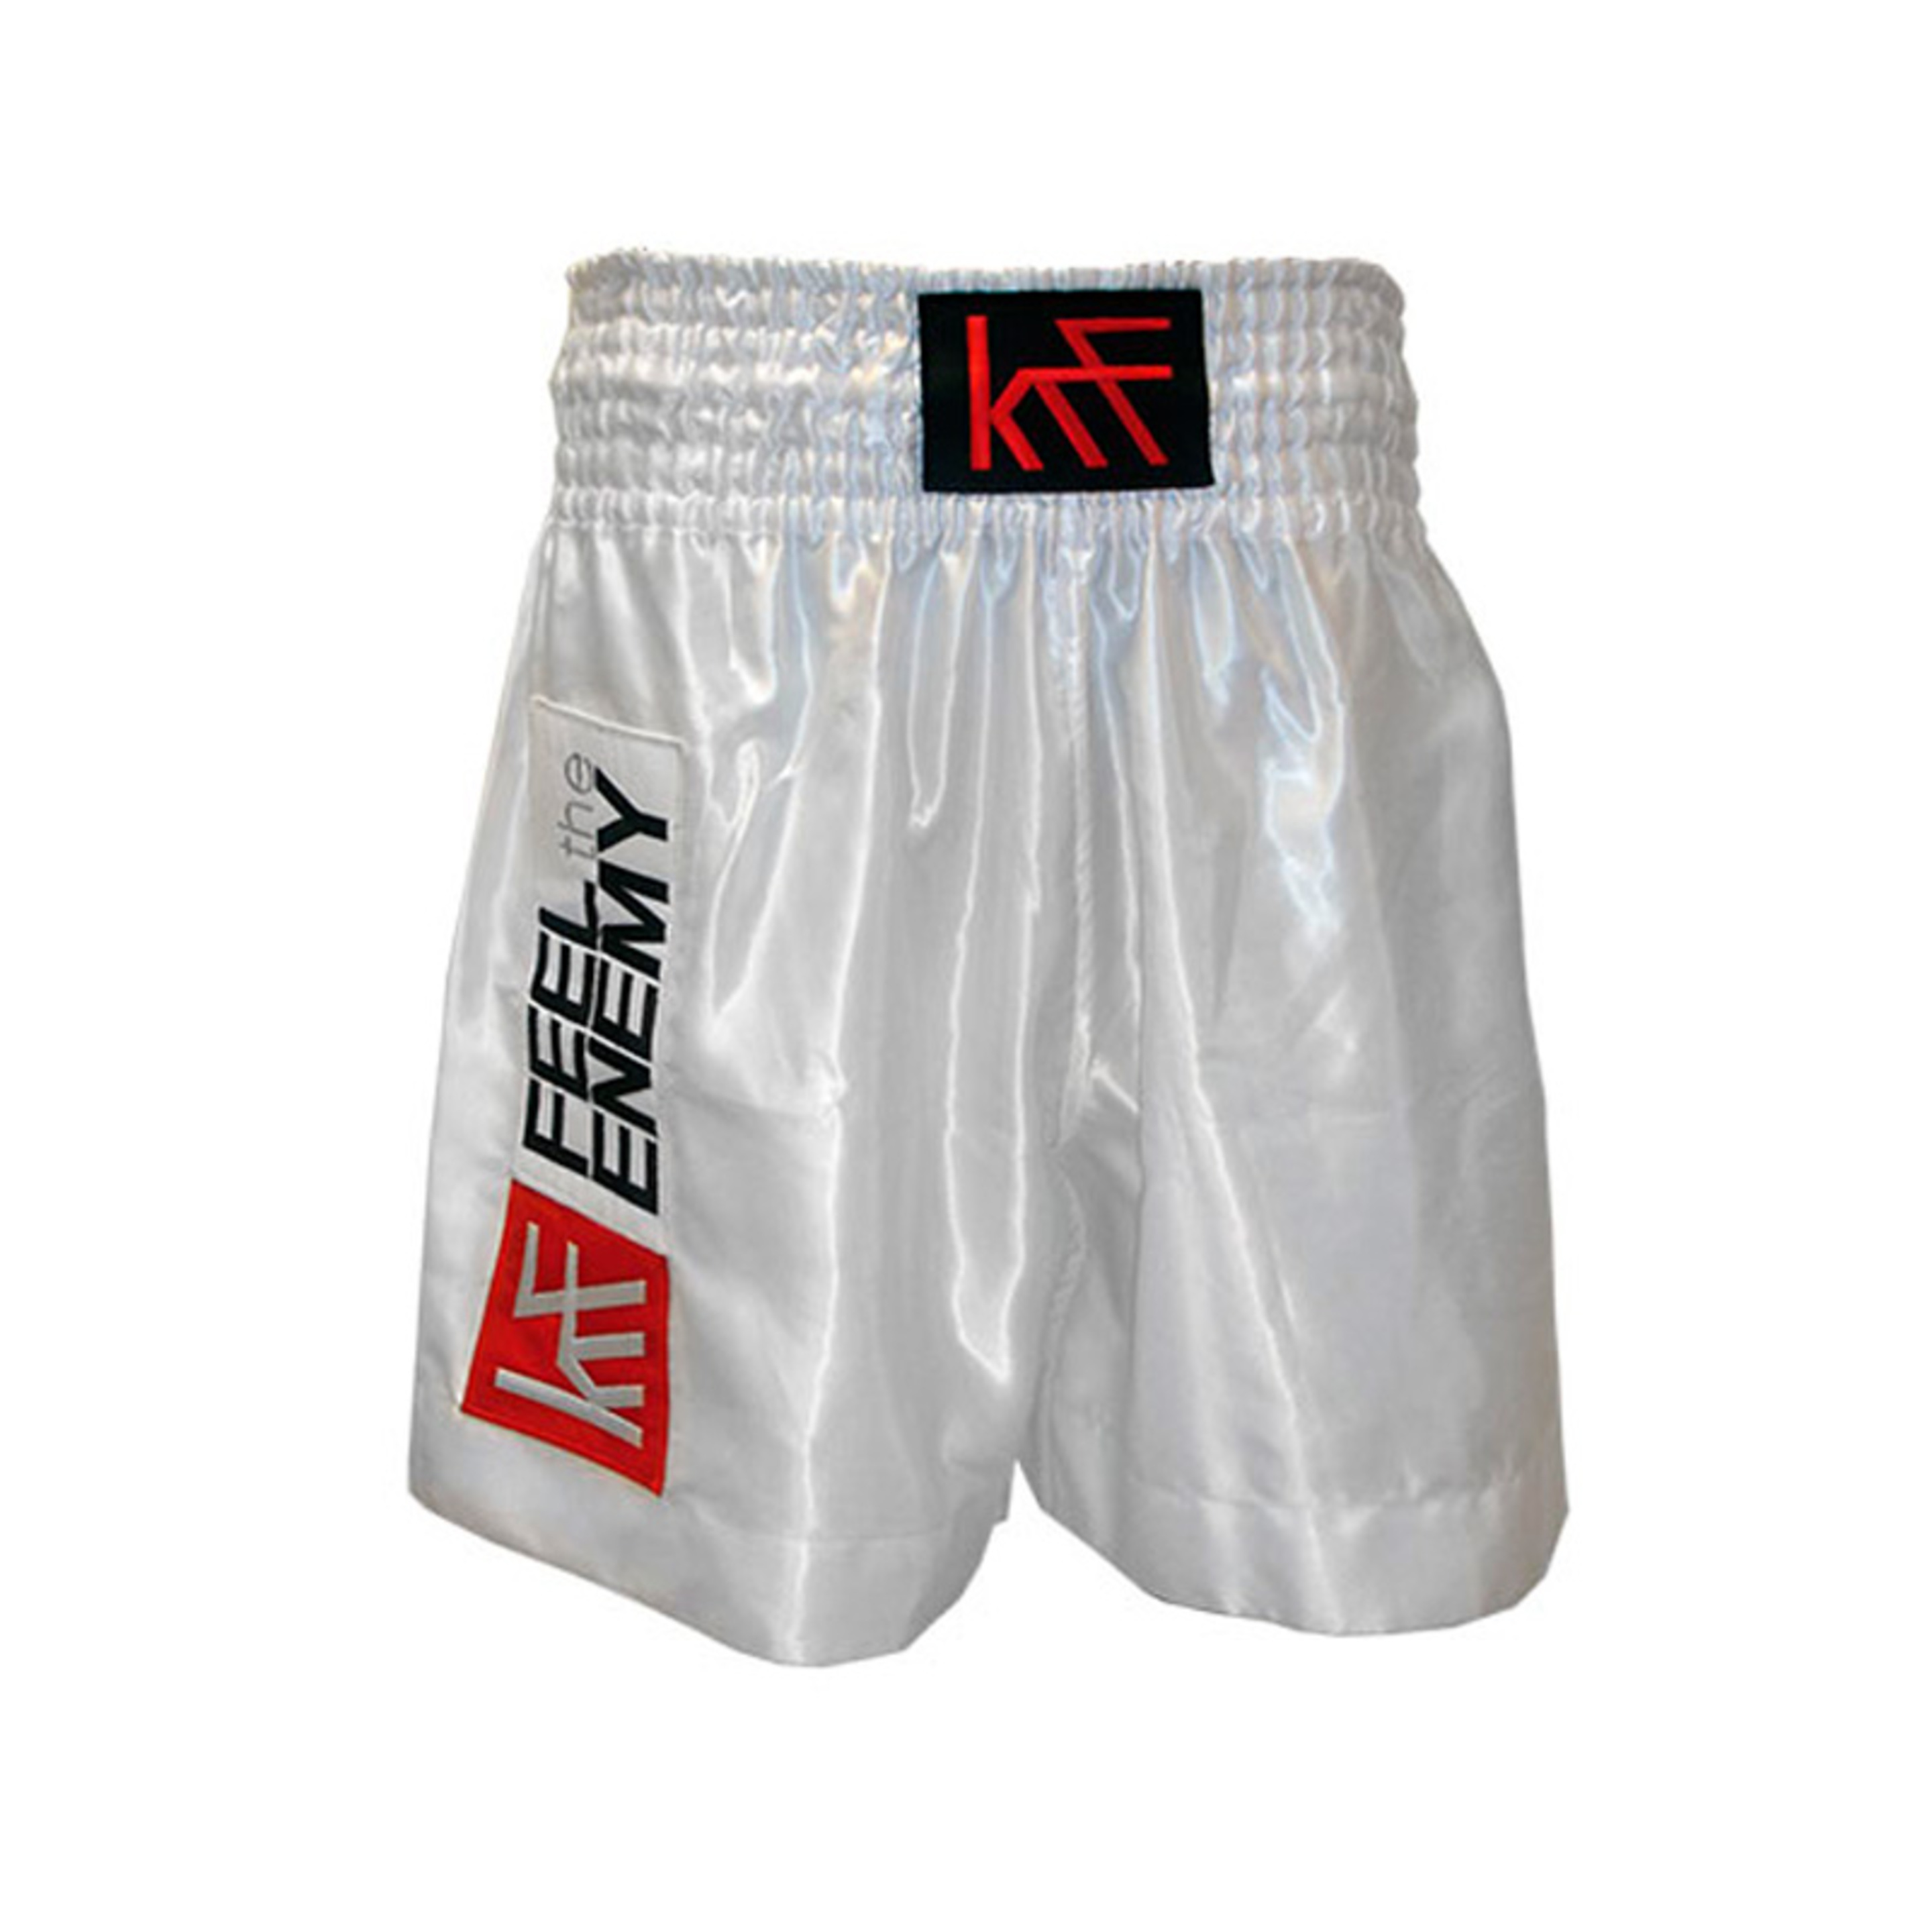 Box Krf Dc Pant Short Boxing Liso Blanco T/l - blanco - 